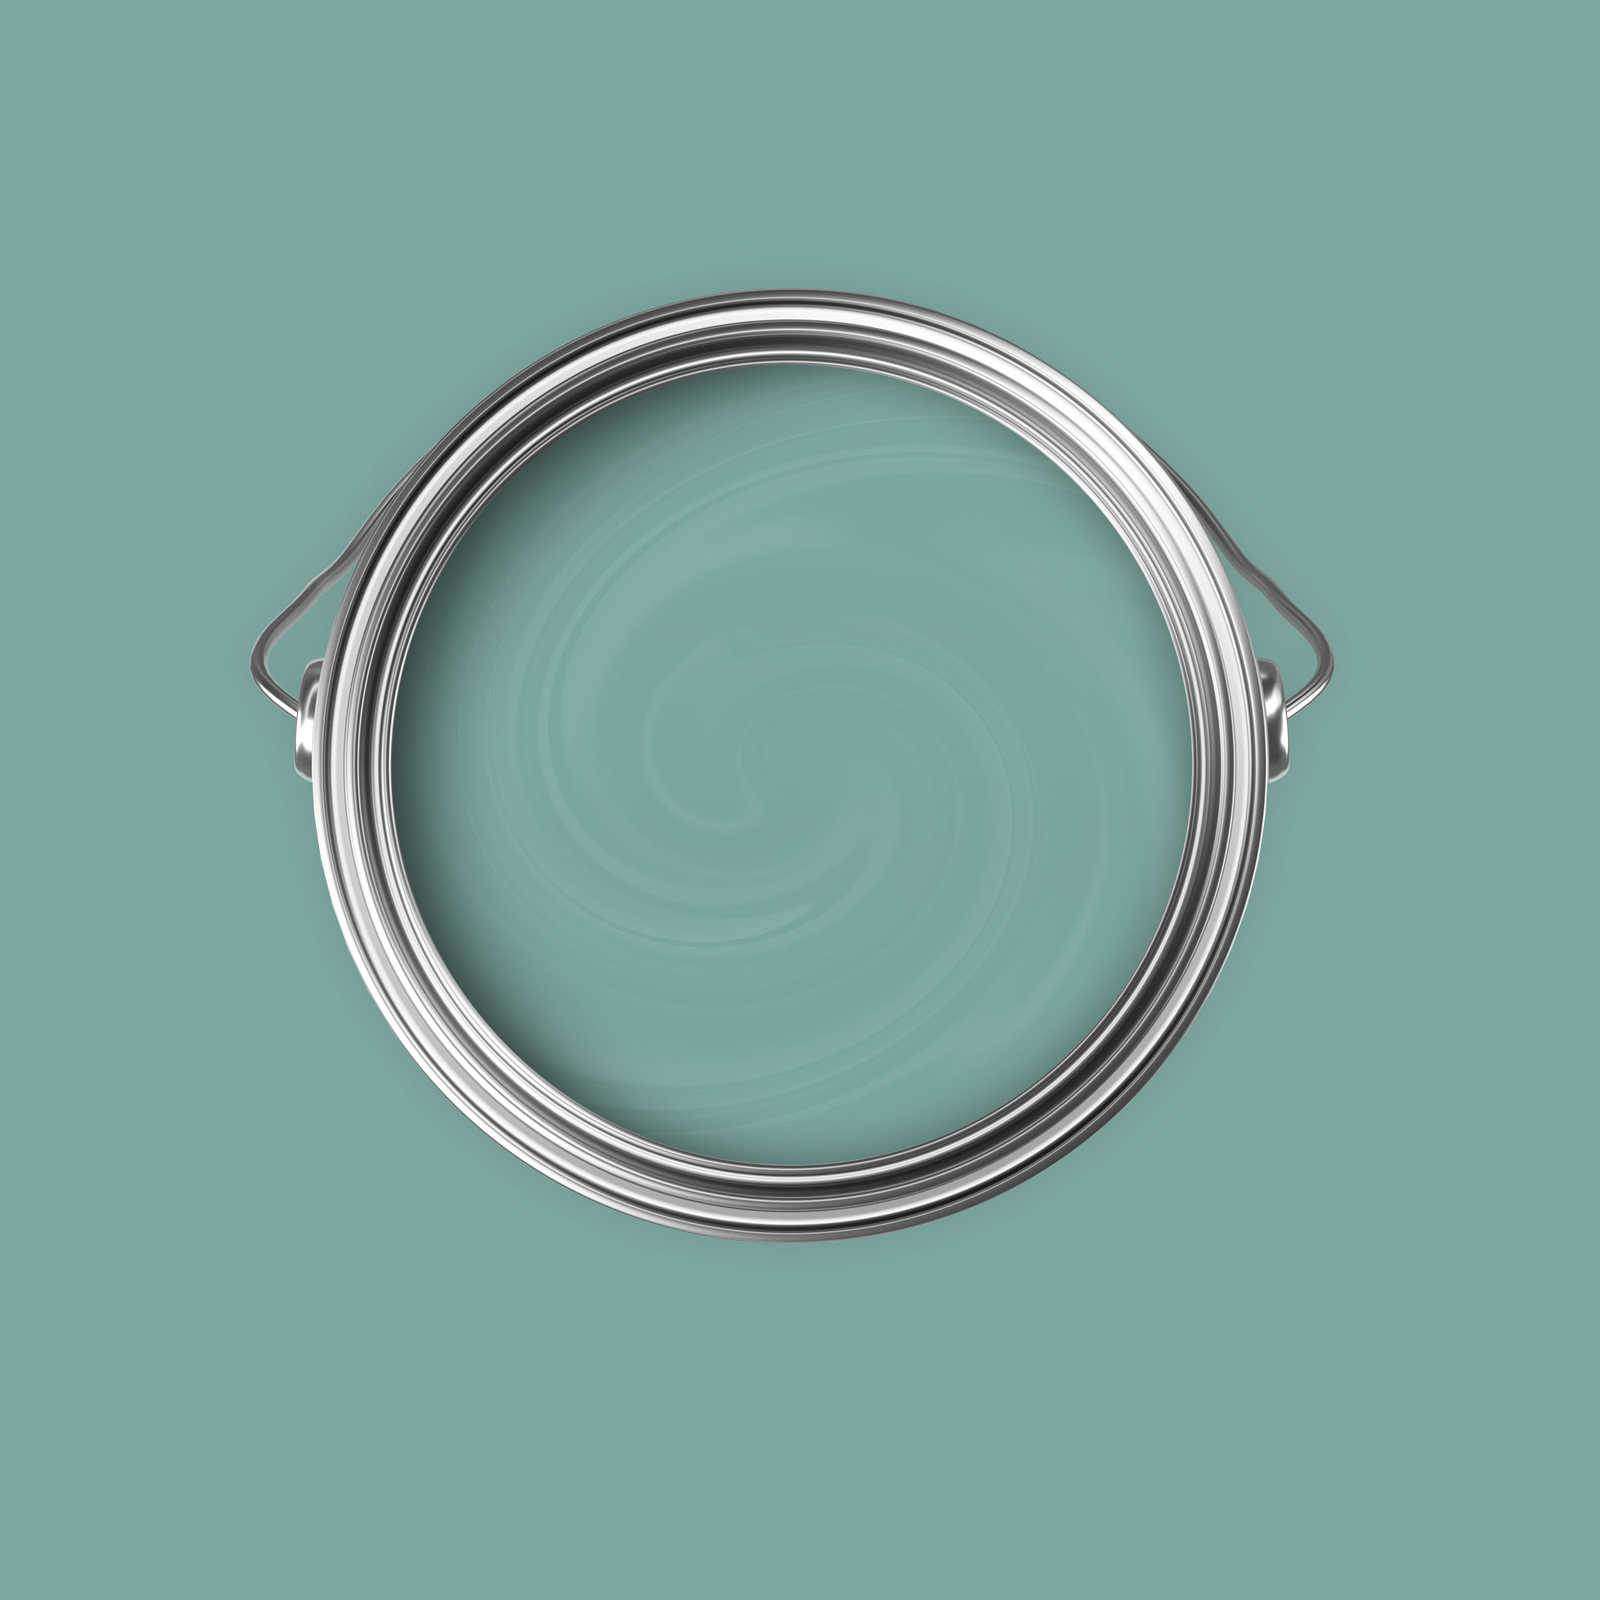             Premium Wandfarbe frisches Salbei »Expressive Emerald« NW409 – 5 Liter
        